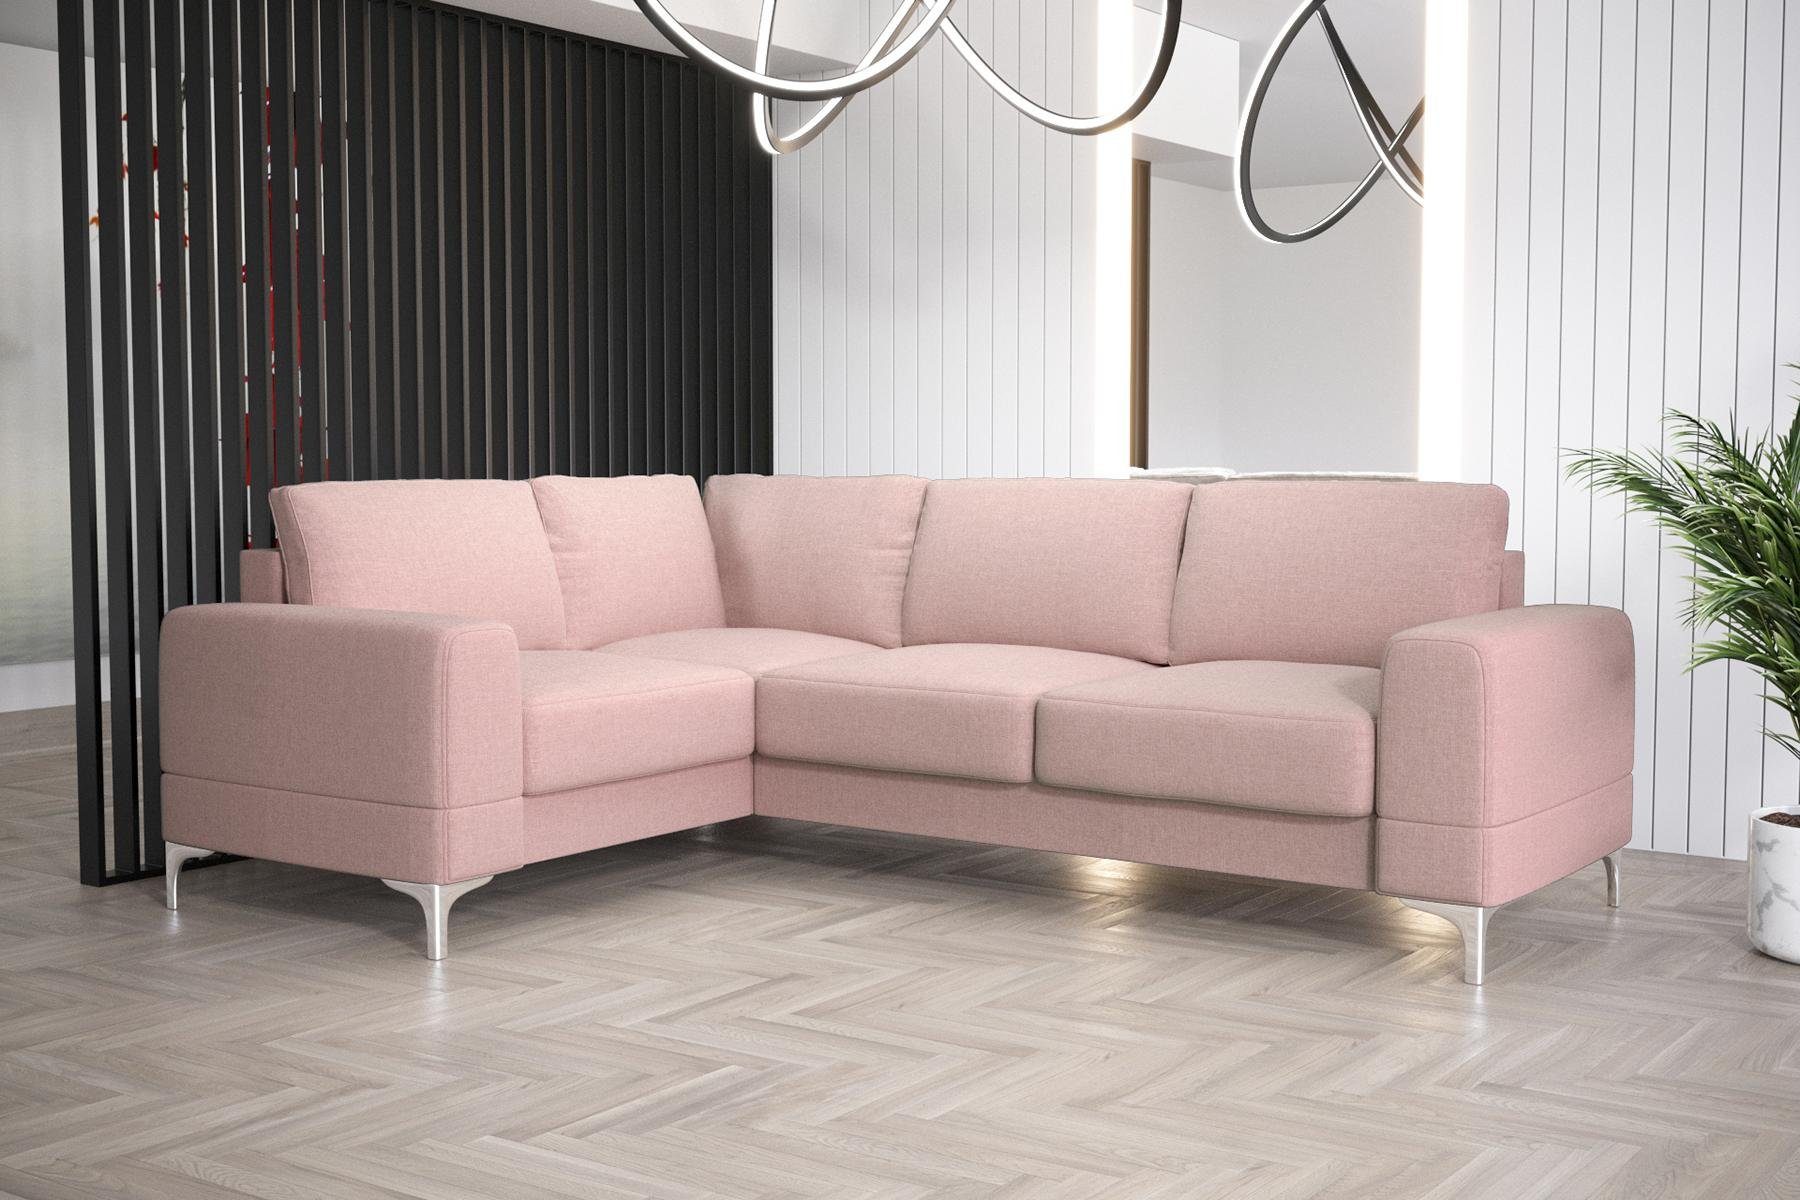 Luxus Europe in Made Ecksofa Rosa Modern Couch, JVmoebel Sofa Ecksofa L-Form Möbel Wohnzimmer